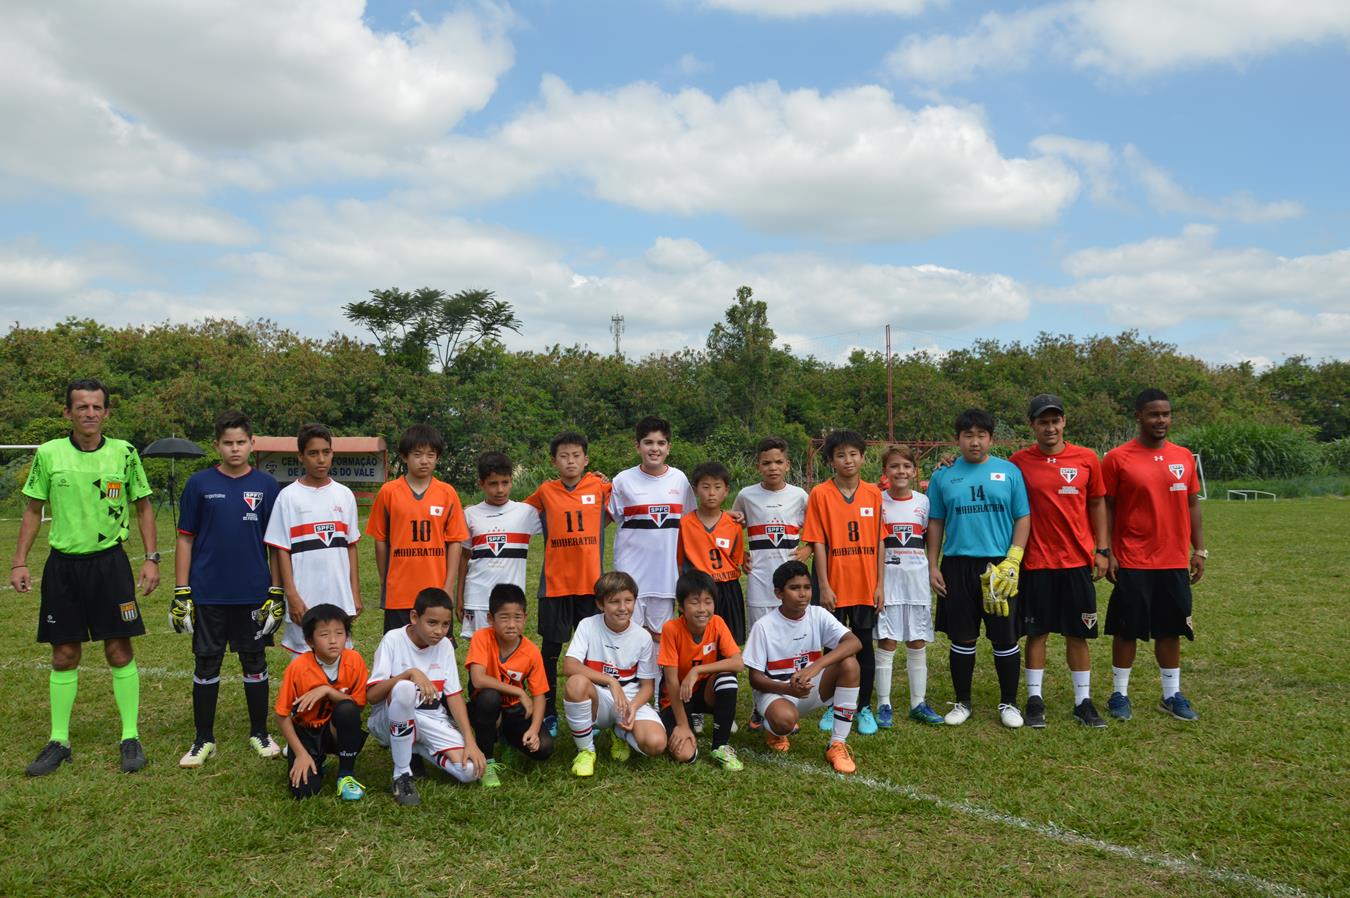 Intercambio esportivo promove integração entre atletas japoneses e brasileiros. Foto: Luci Judice Yizima